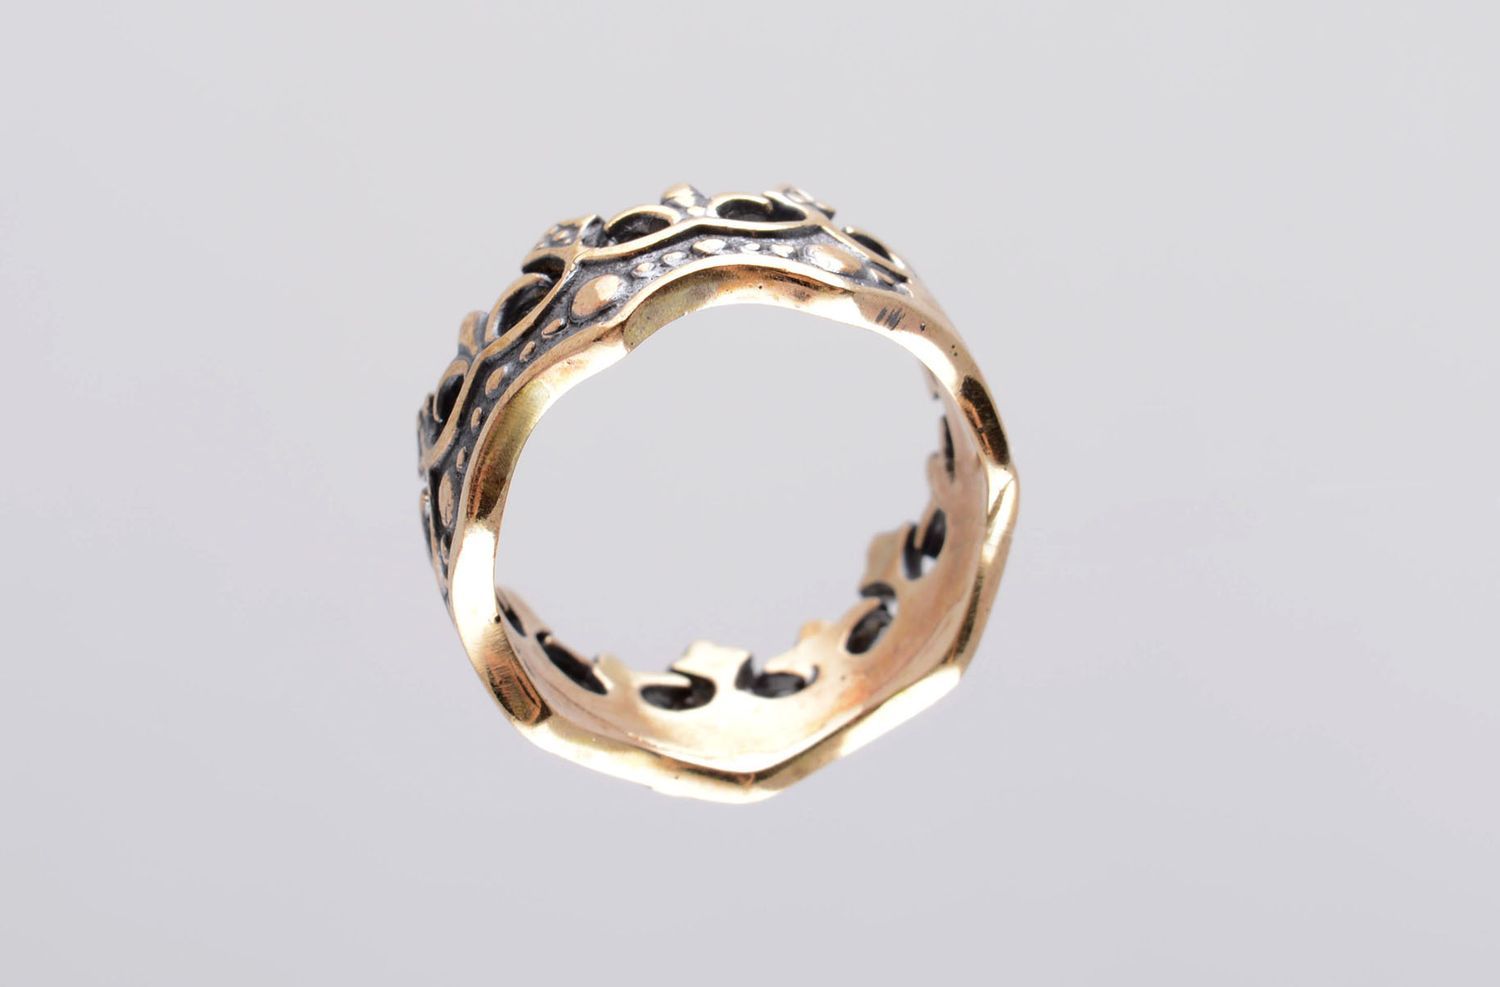 Кольцо ручной работы бронзовое кольцо почерненное женское кольцо оригинальное фото 4